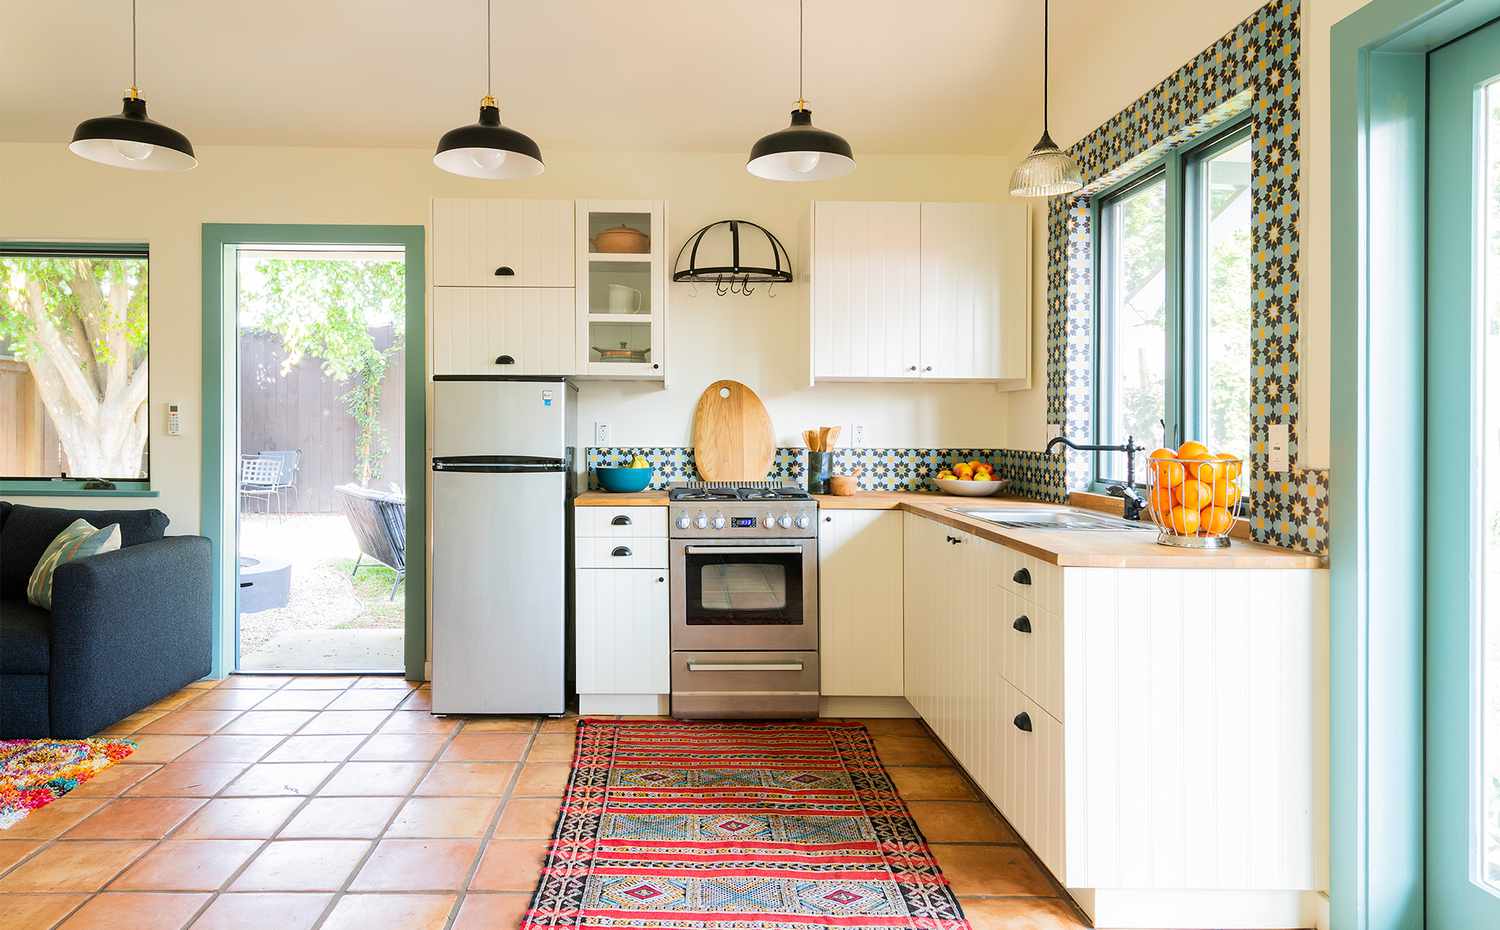 azulejo colorido na cozinha